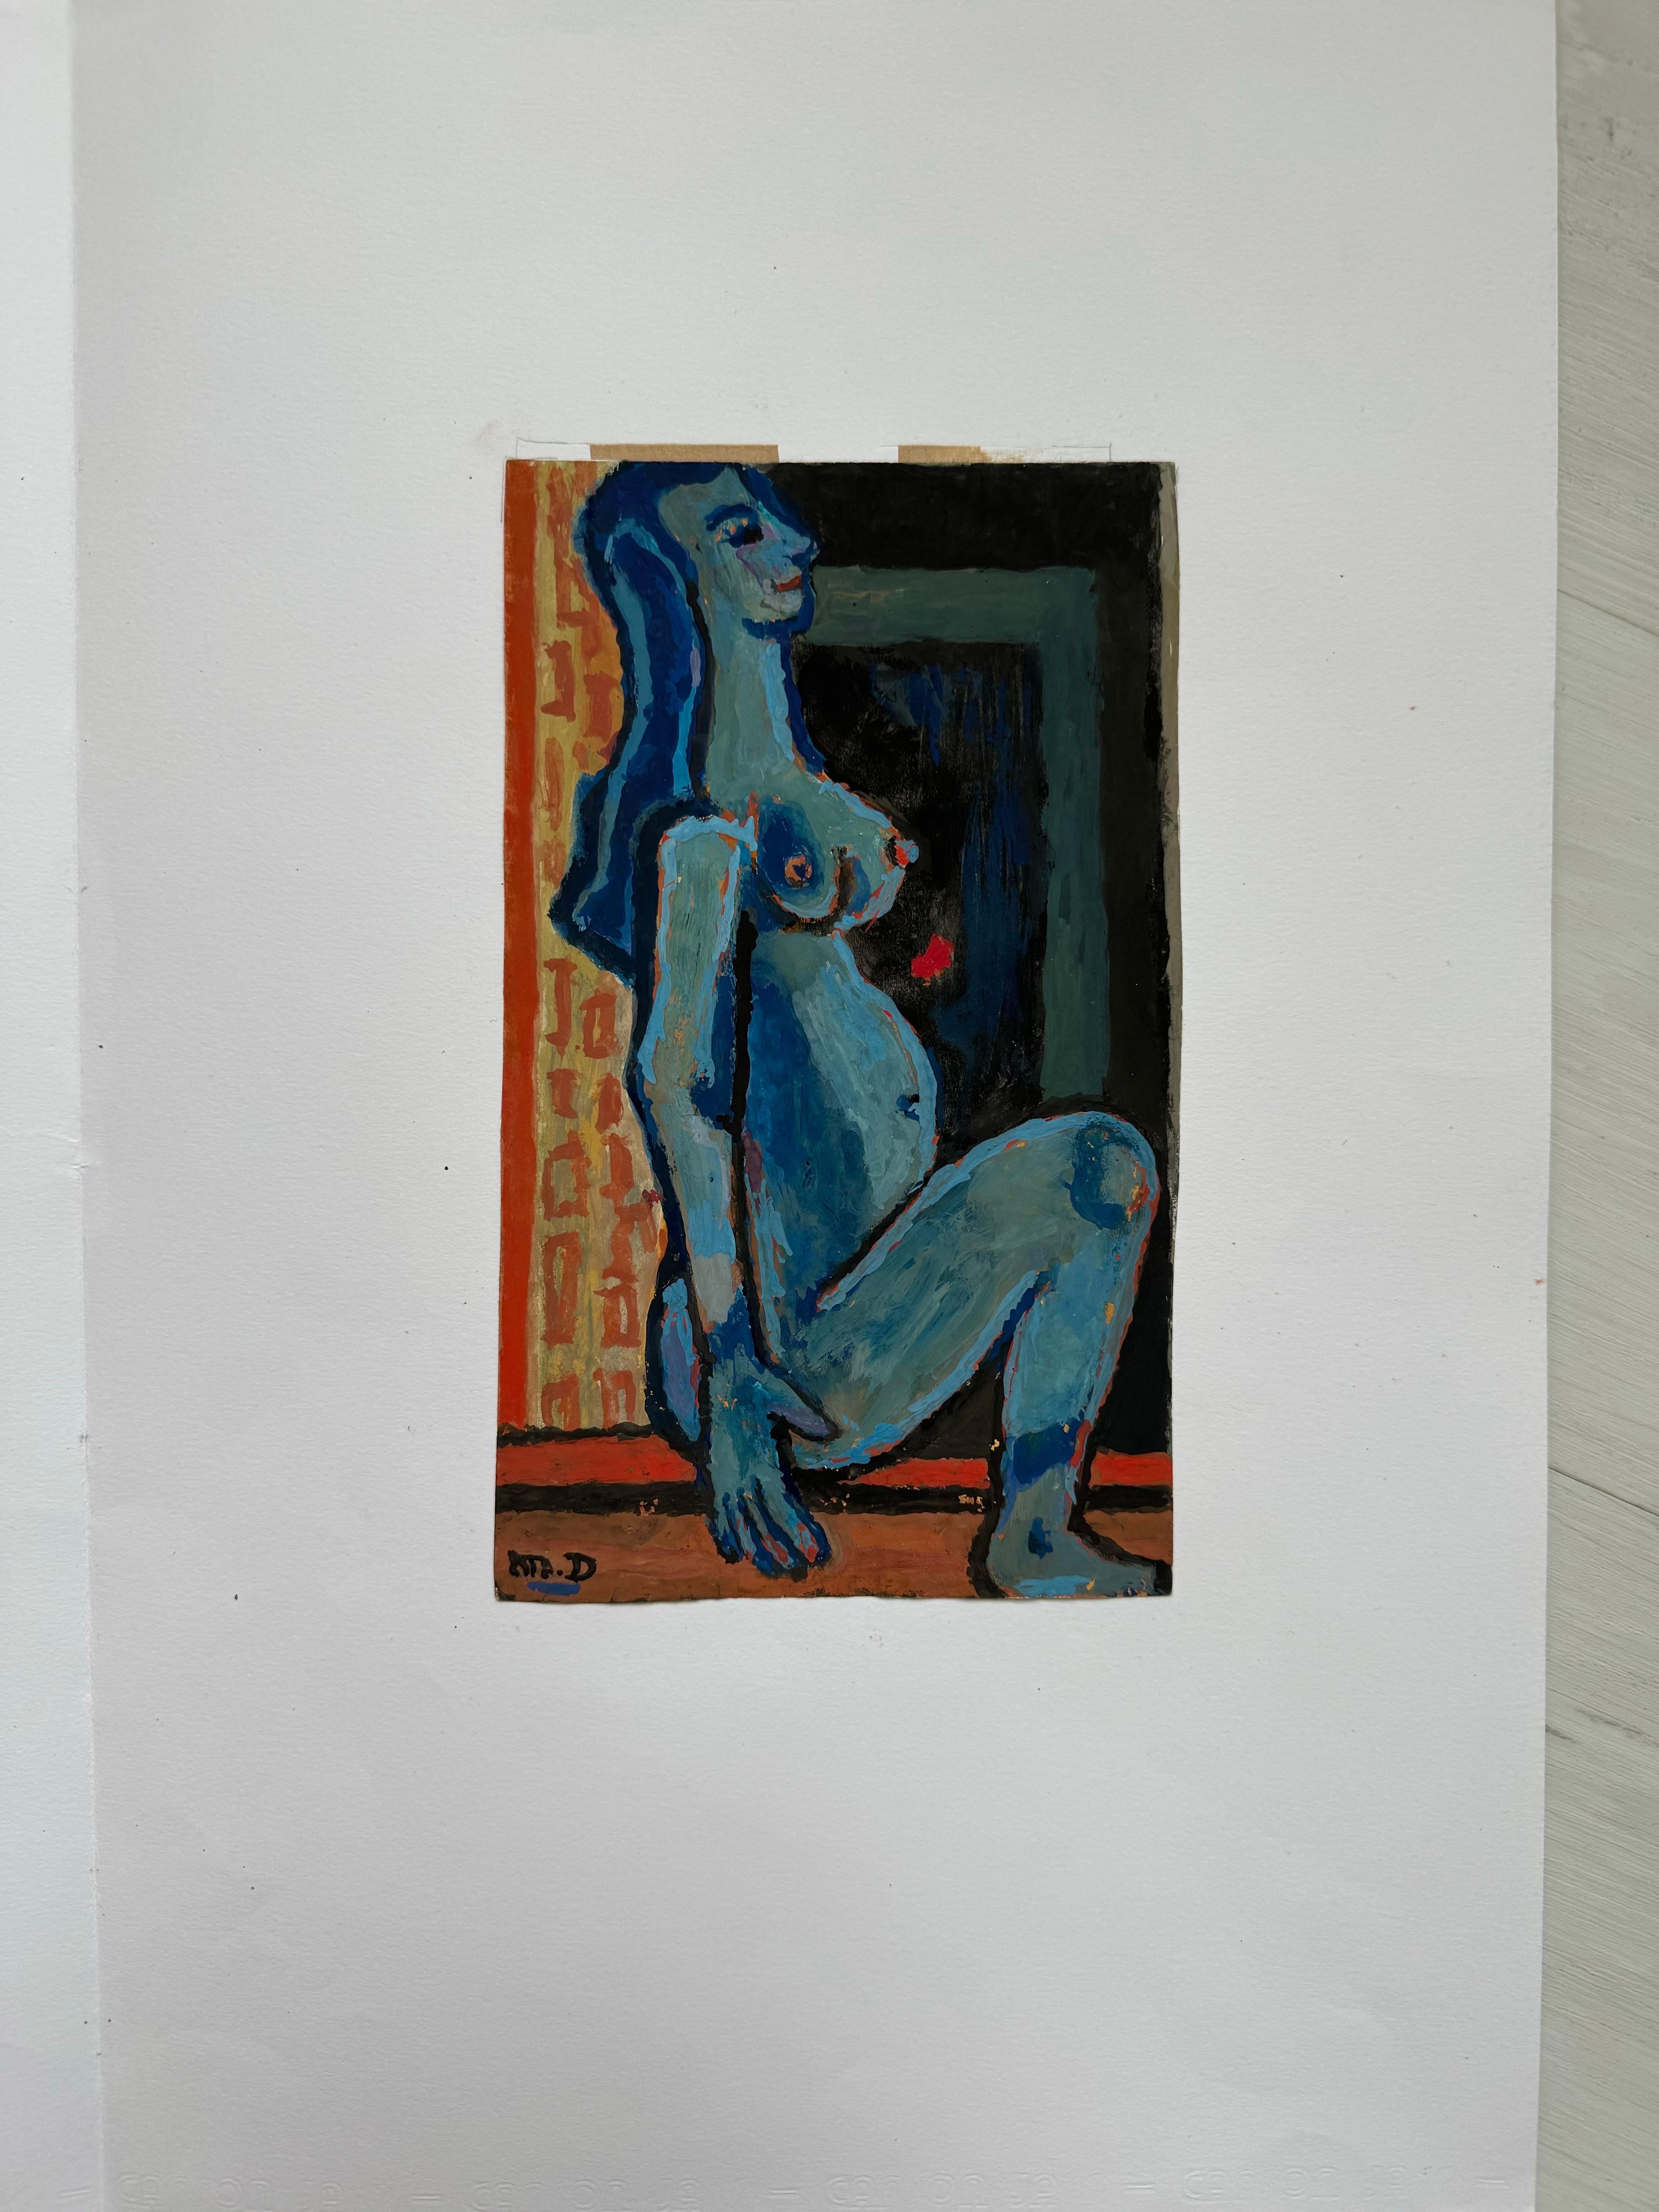 Blaue Figur sitzend von Michel Debieve, französisches kubistisches Gemälde aus der Mitte des Jahrhunderts (Kubismus), Art, von Michel Debiève